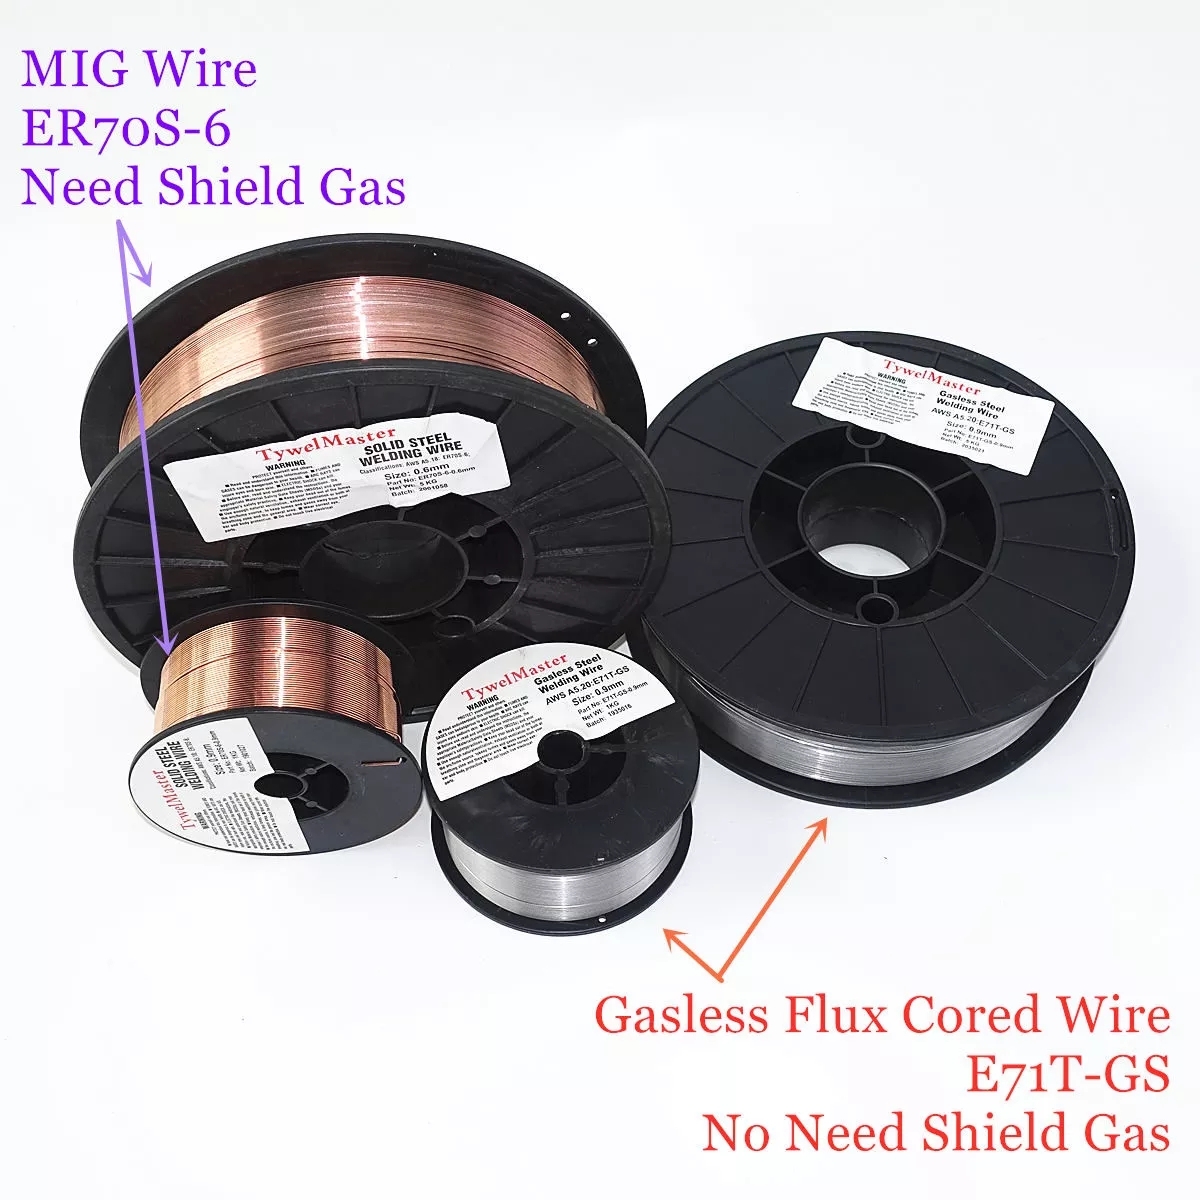 E71T-GS-Cored-Gasless-Flux-Welding-Wire-no-Gaas-or-MIG-Welding-Wire-ER70S-6-06--08--09mm-1kg-Steel-W-1822237-3